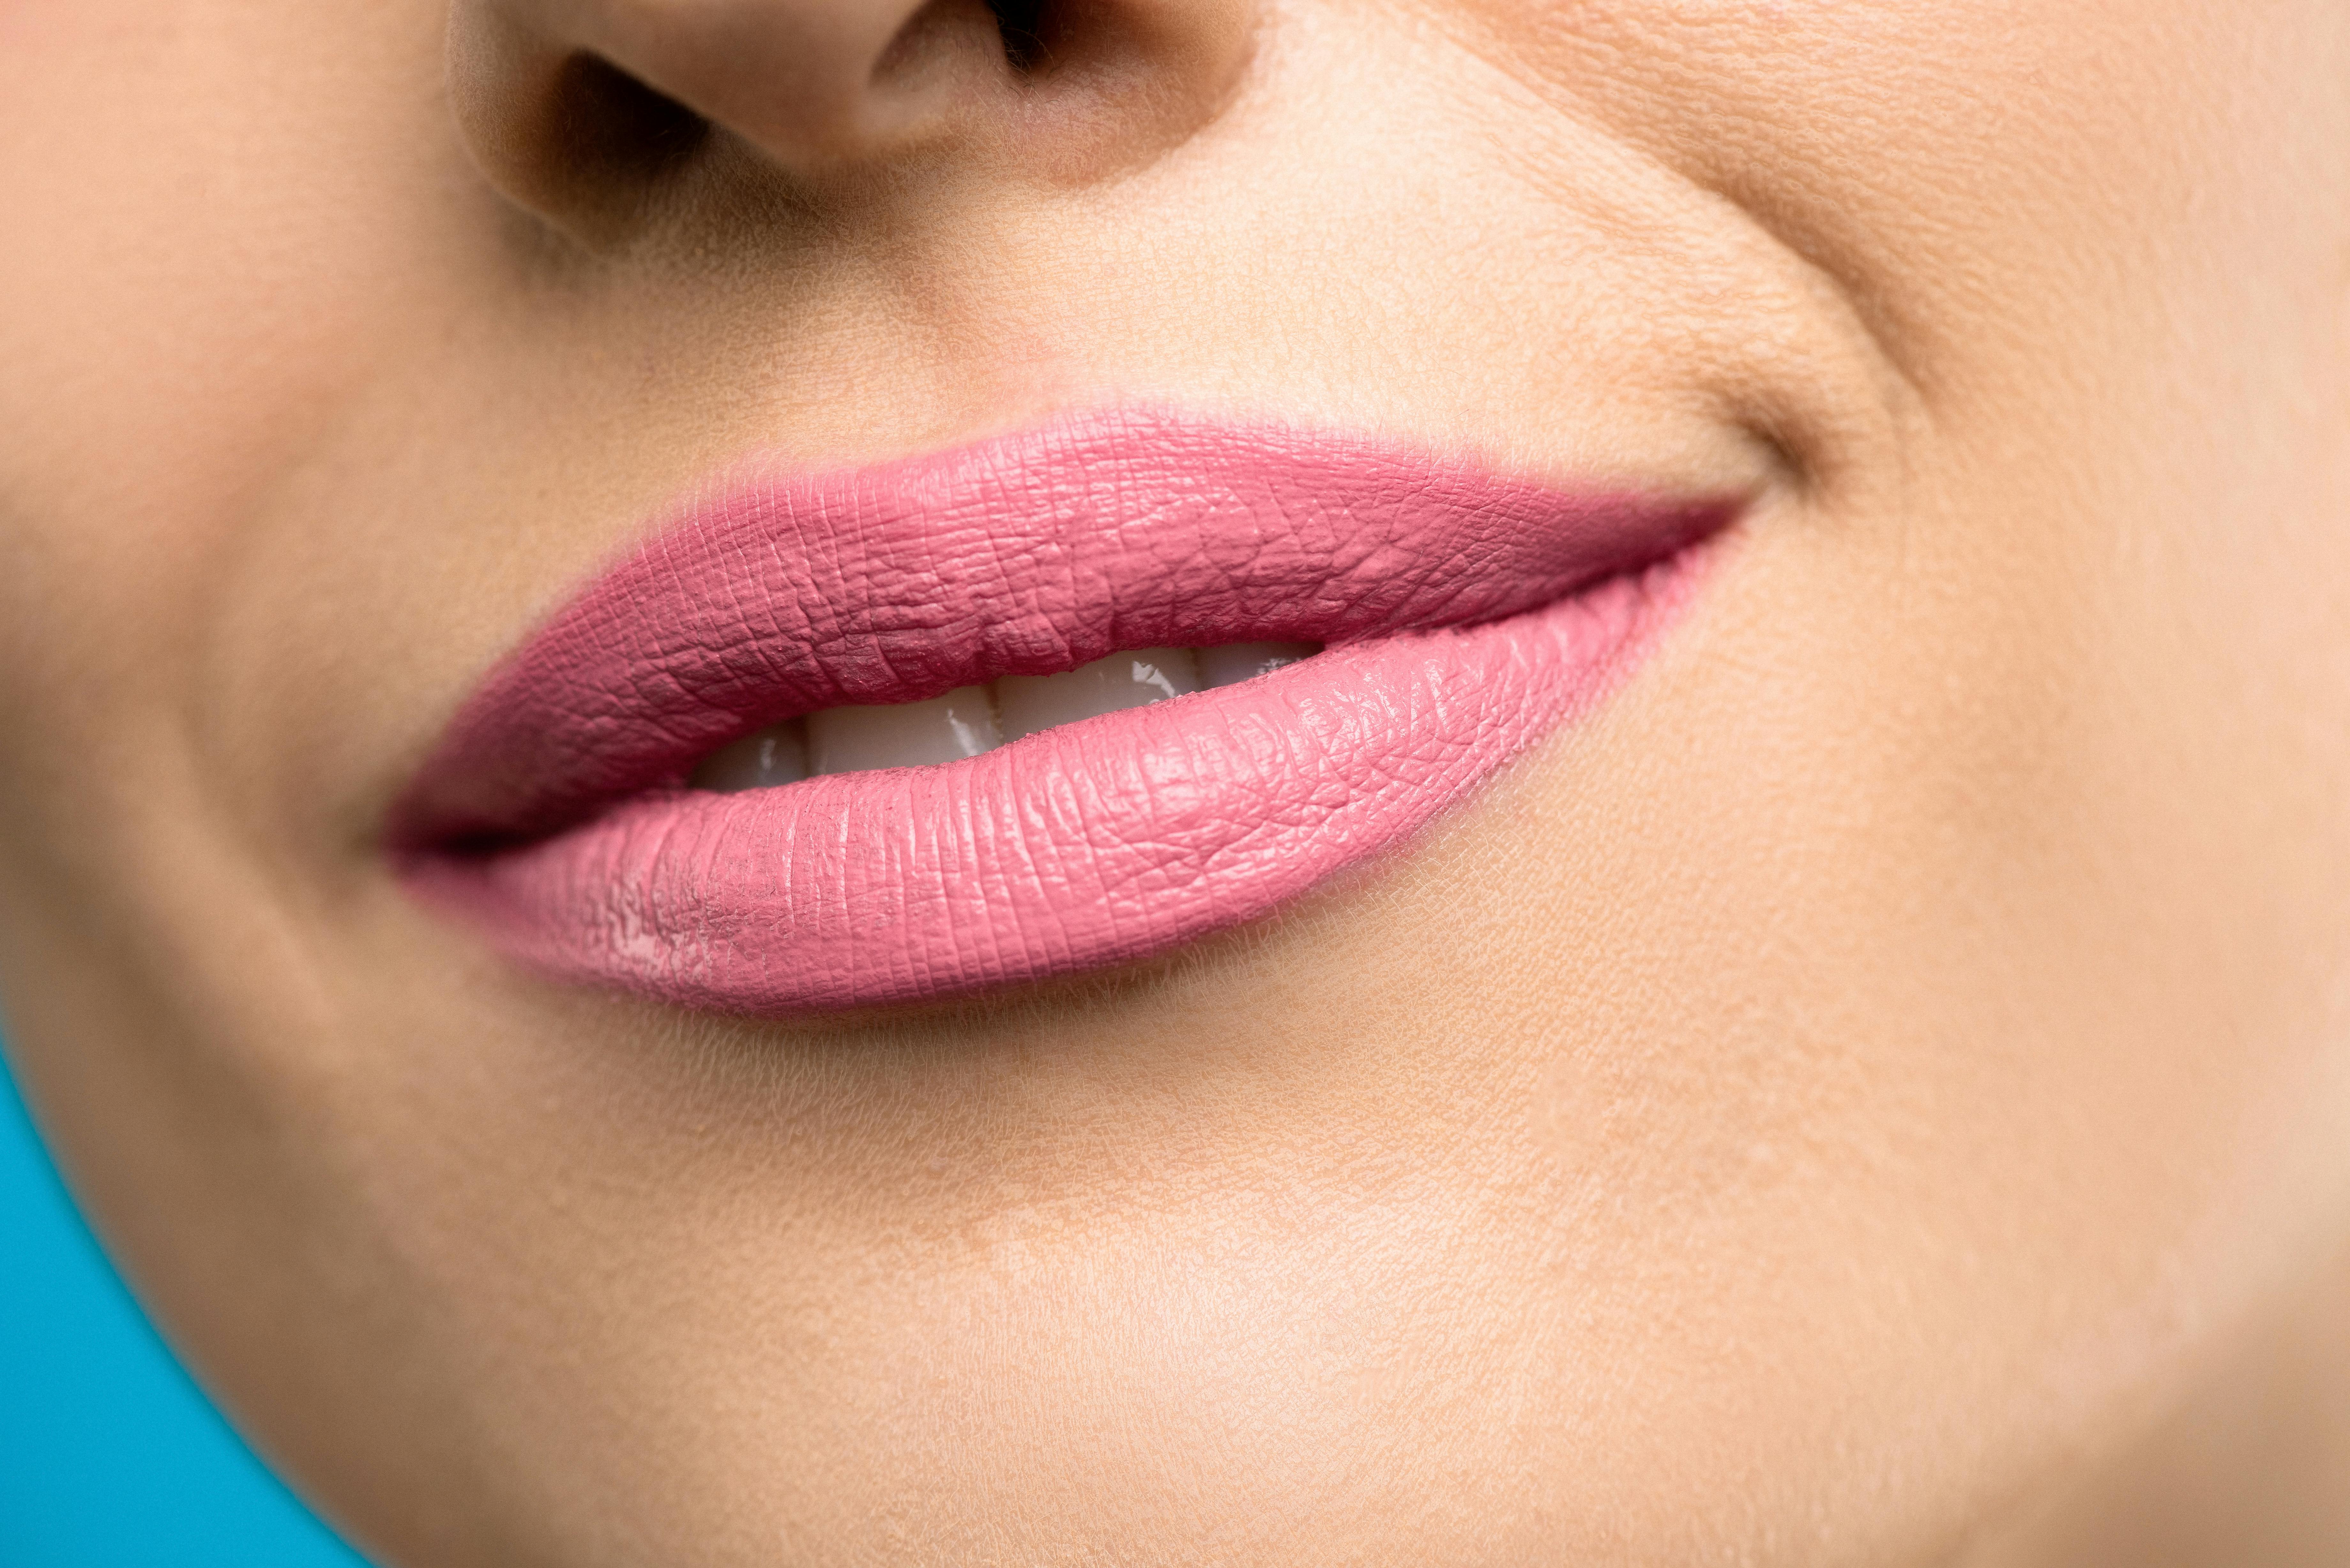 Woman With Pink Lipstick \u00b7 Free Stock Photo